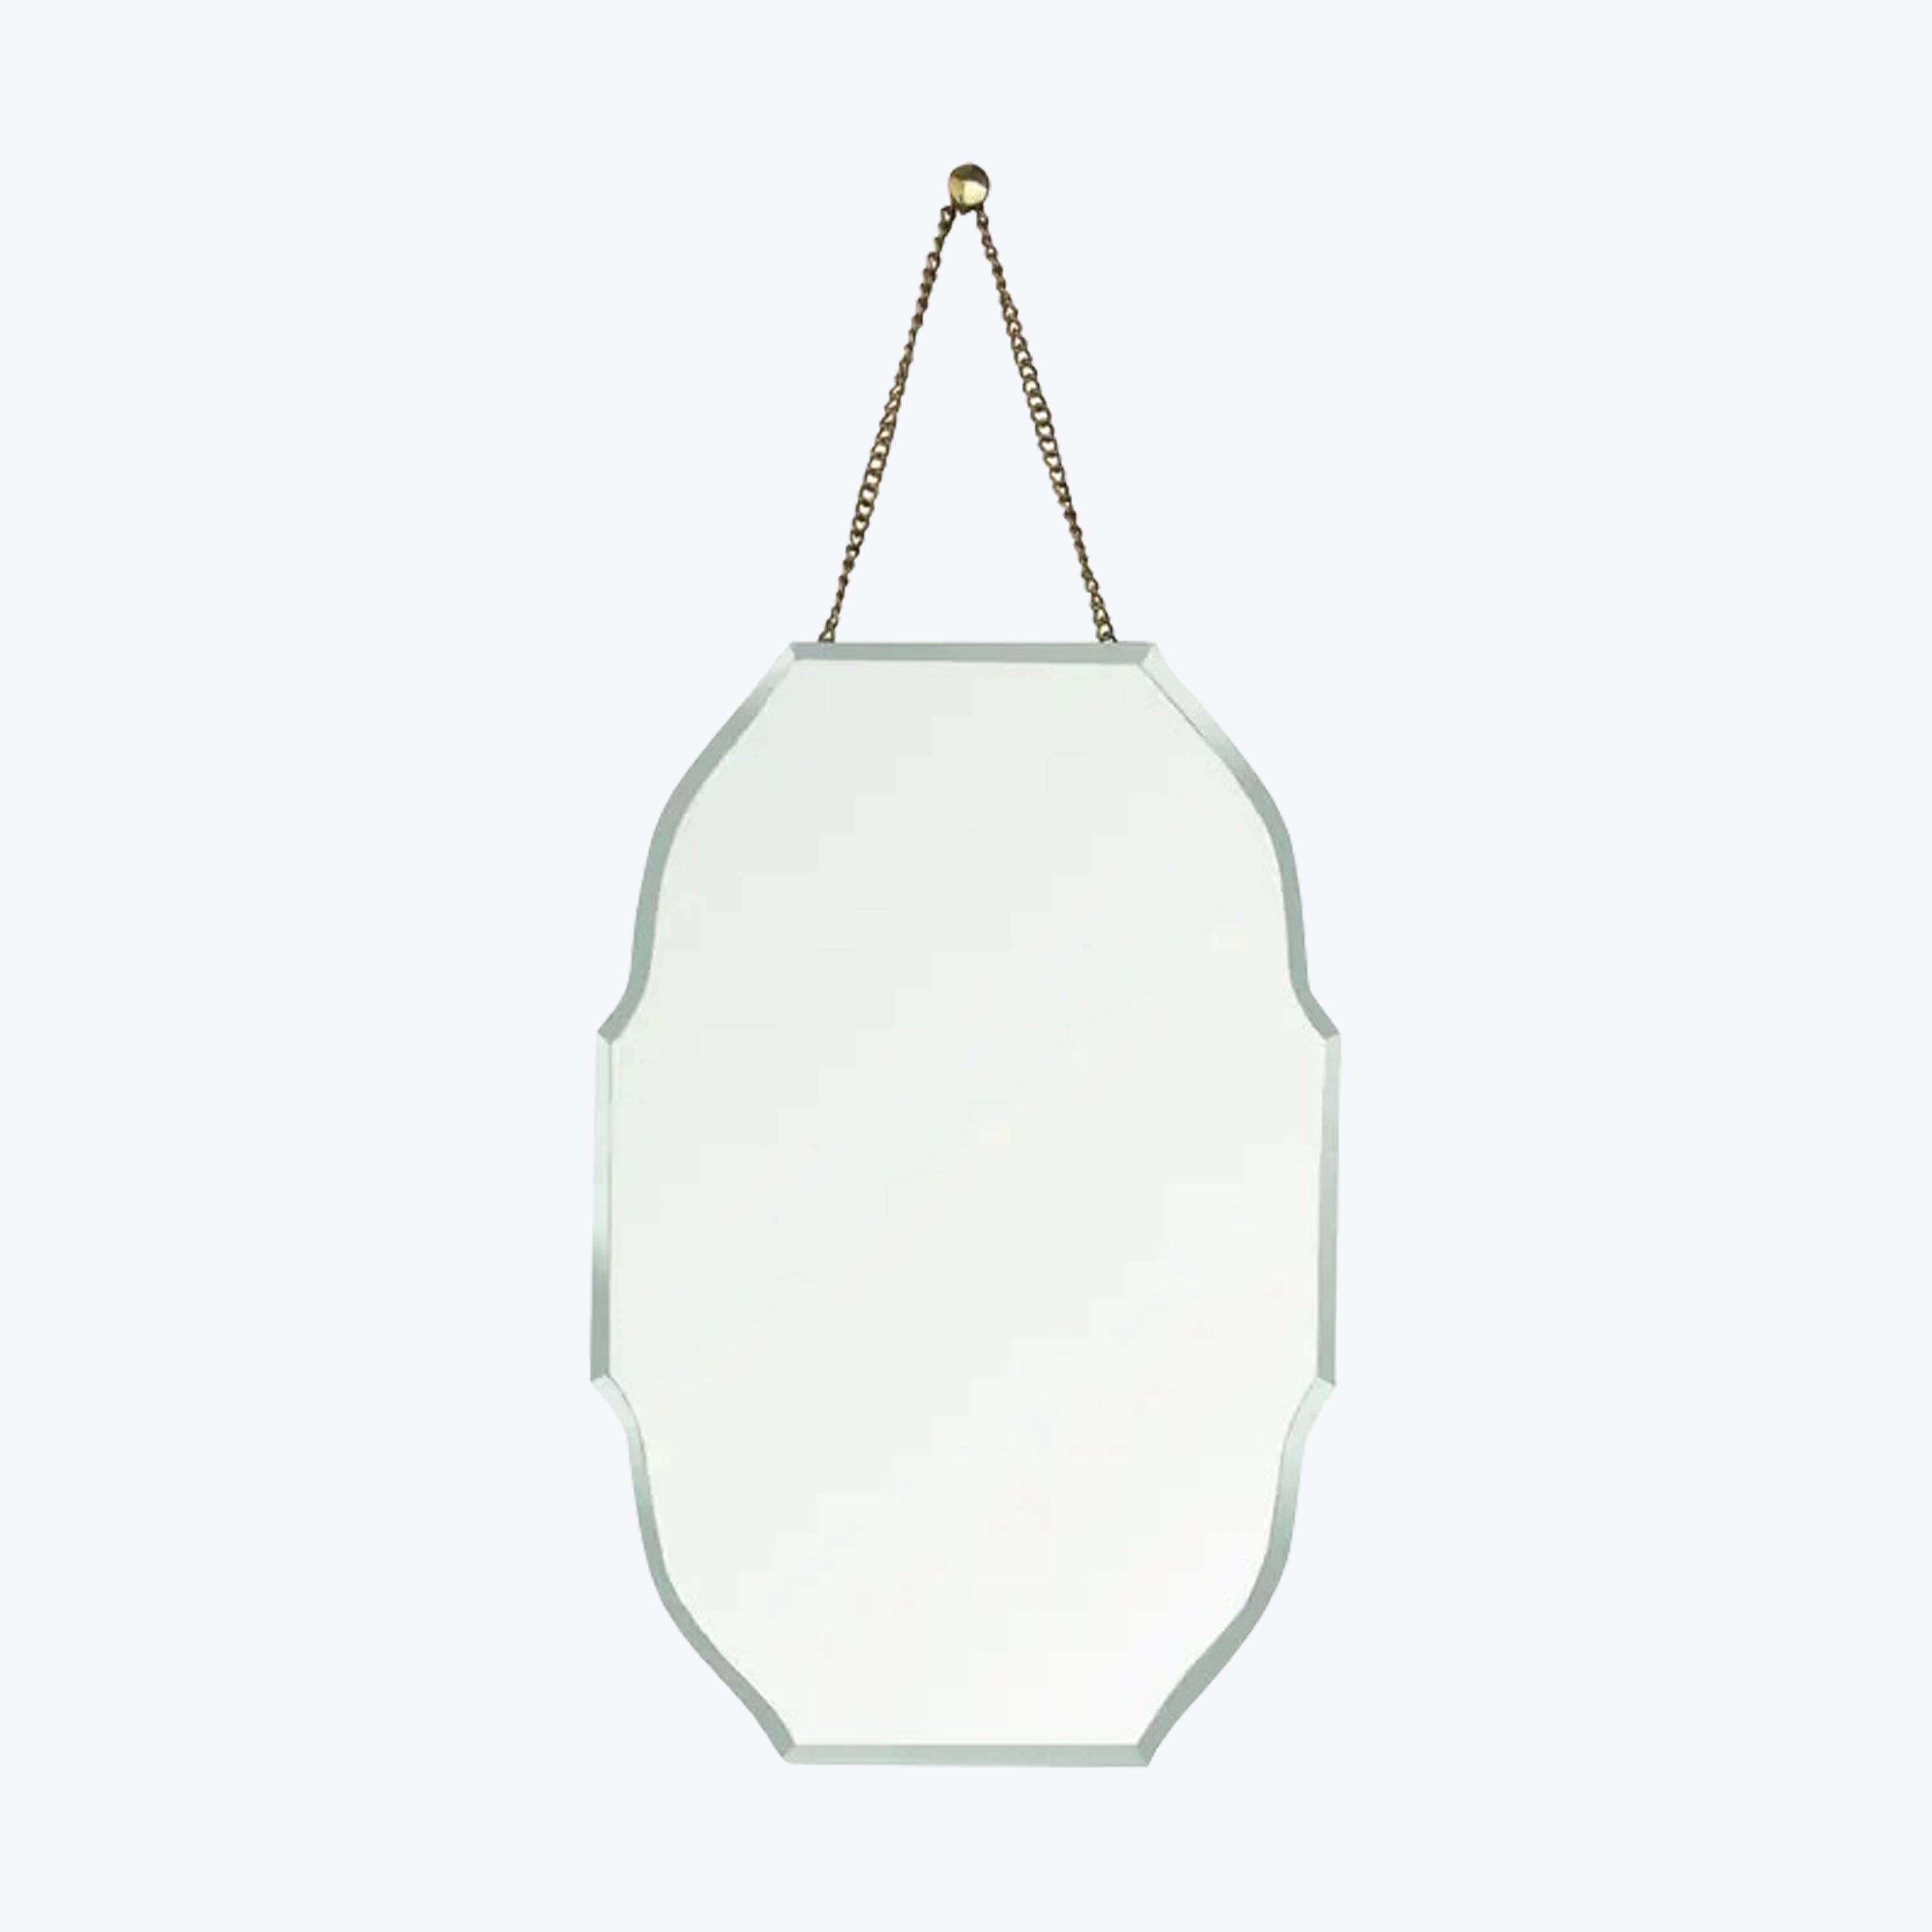 Farrah Beloved Mirror, Brass - Oval